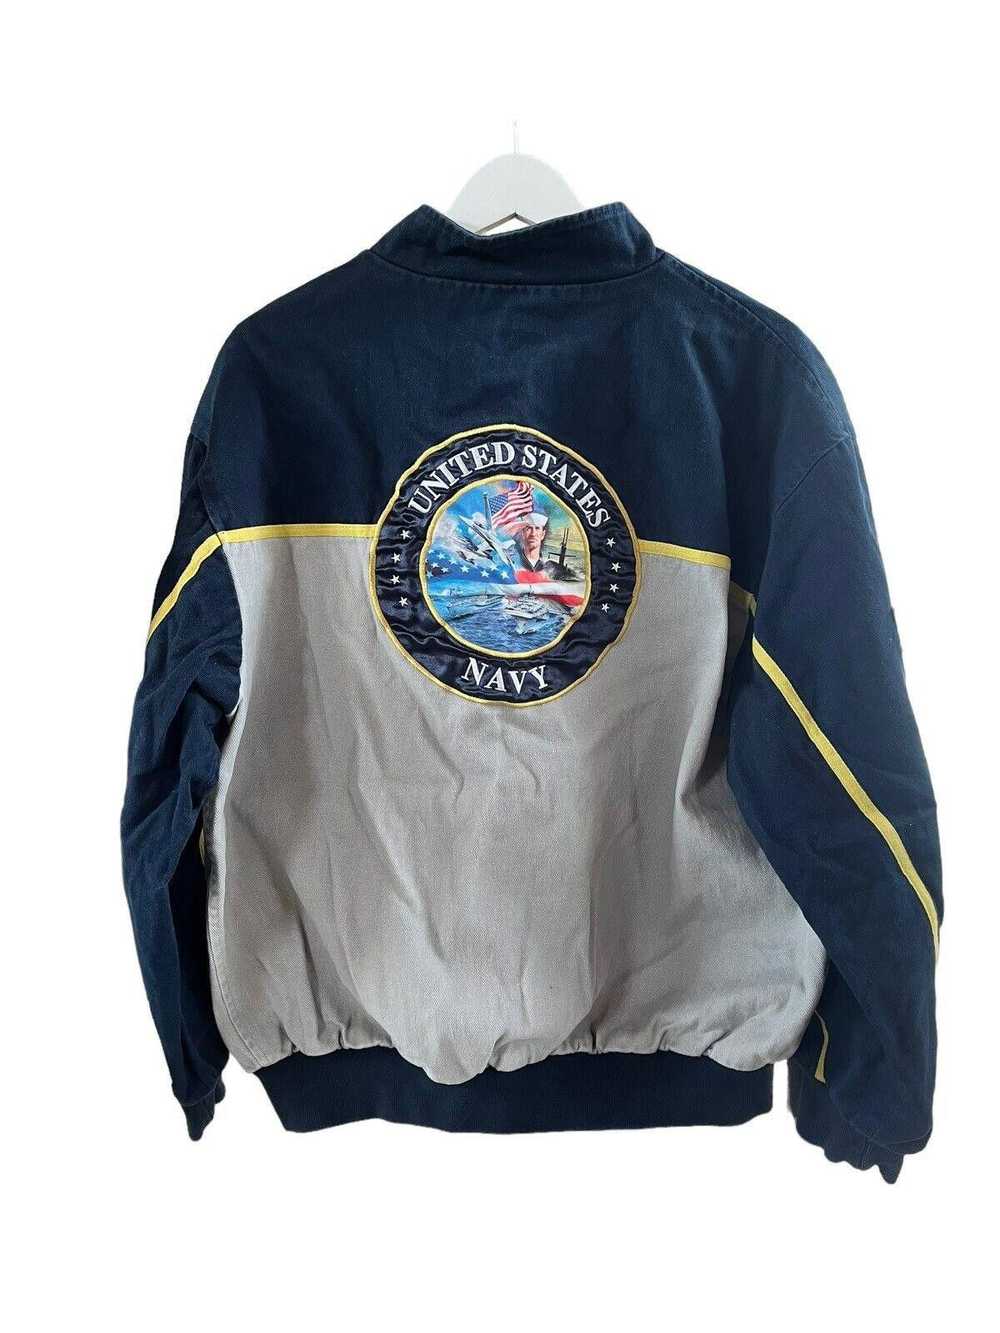 Designer 2011 Navy USA Reversible Jacket Men’s Me… - image 4